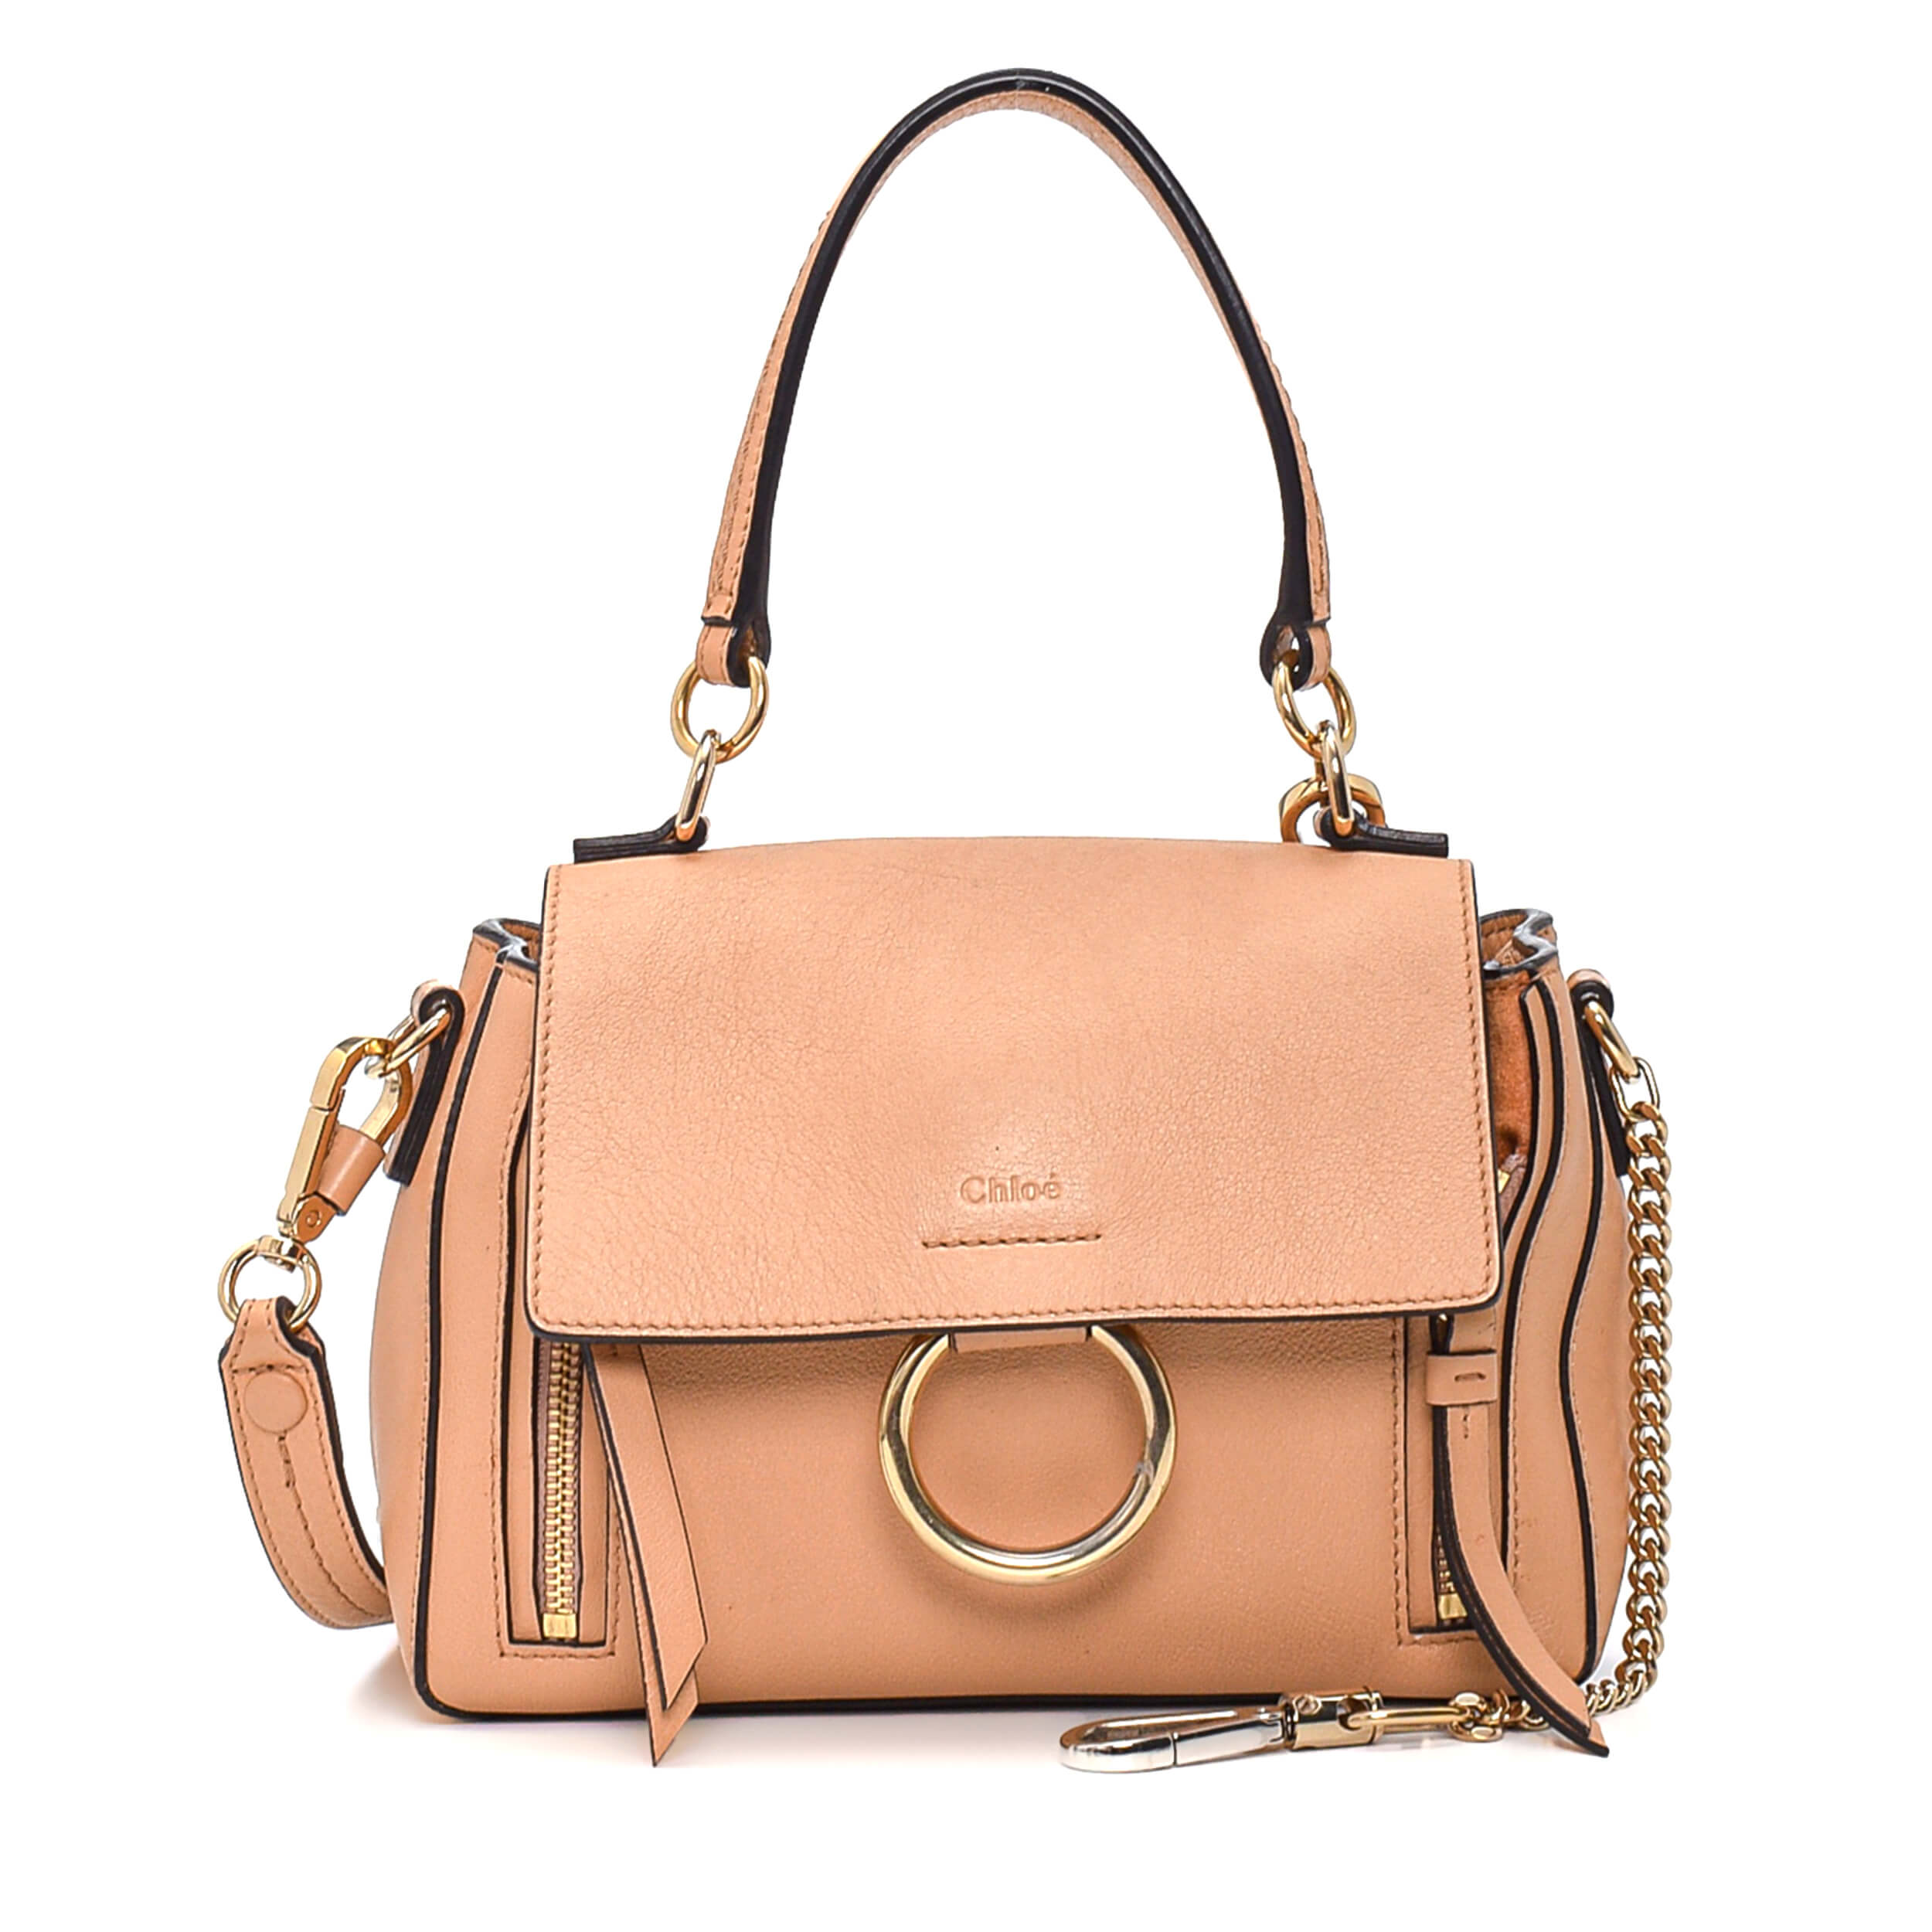 Chloe - Beige Leather Faye Small Bag